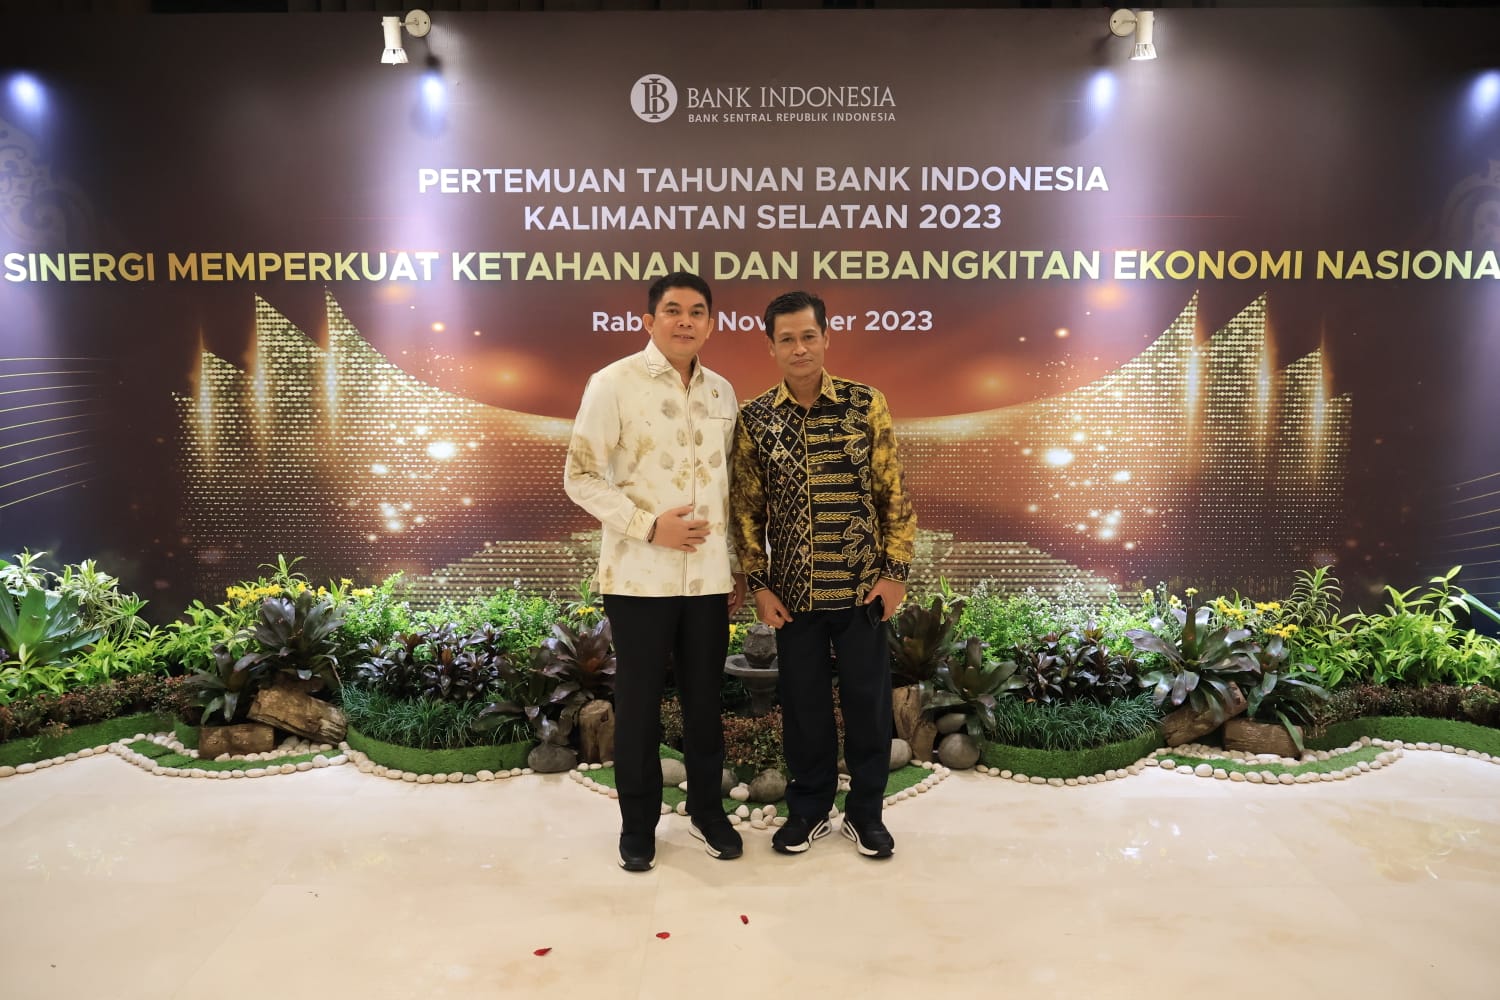 Wabup Andi Rudi Latif Hadiri Pertemuan Tahunan Bank Indonesia Kalimantan Selatan